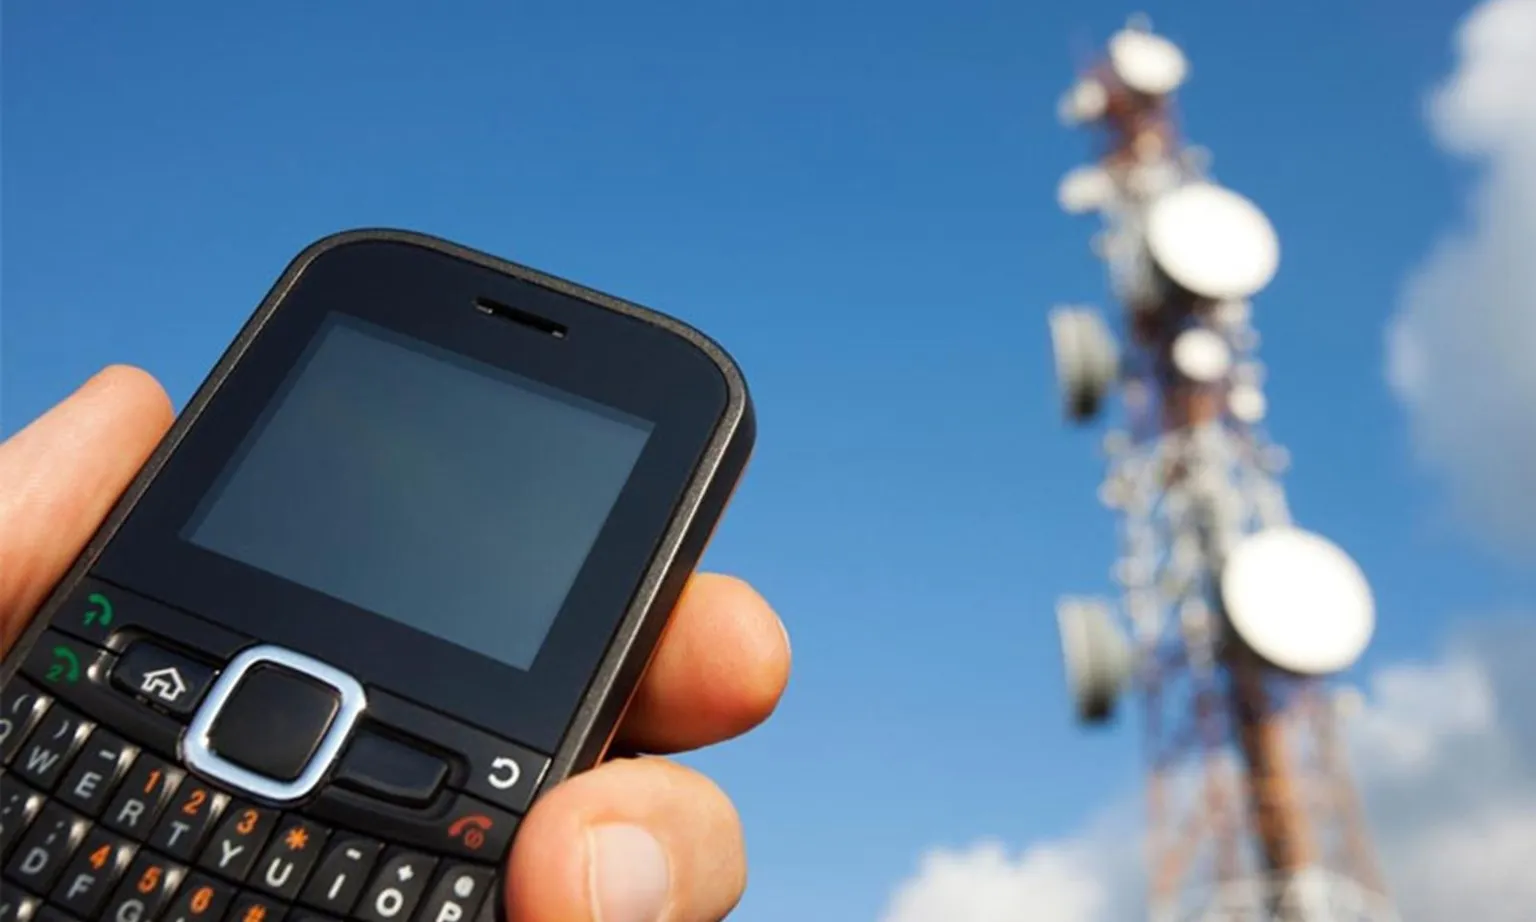 Chuẩn bị cho lộ trình tắt sóng 2G, nhiều nhà mạng sẽ ra mắt dòng điện thoại cục gạch 4G giá rẻ